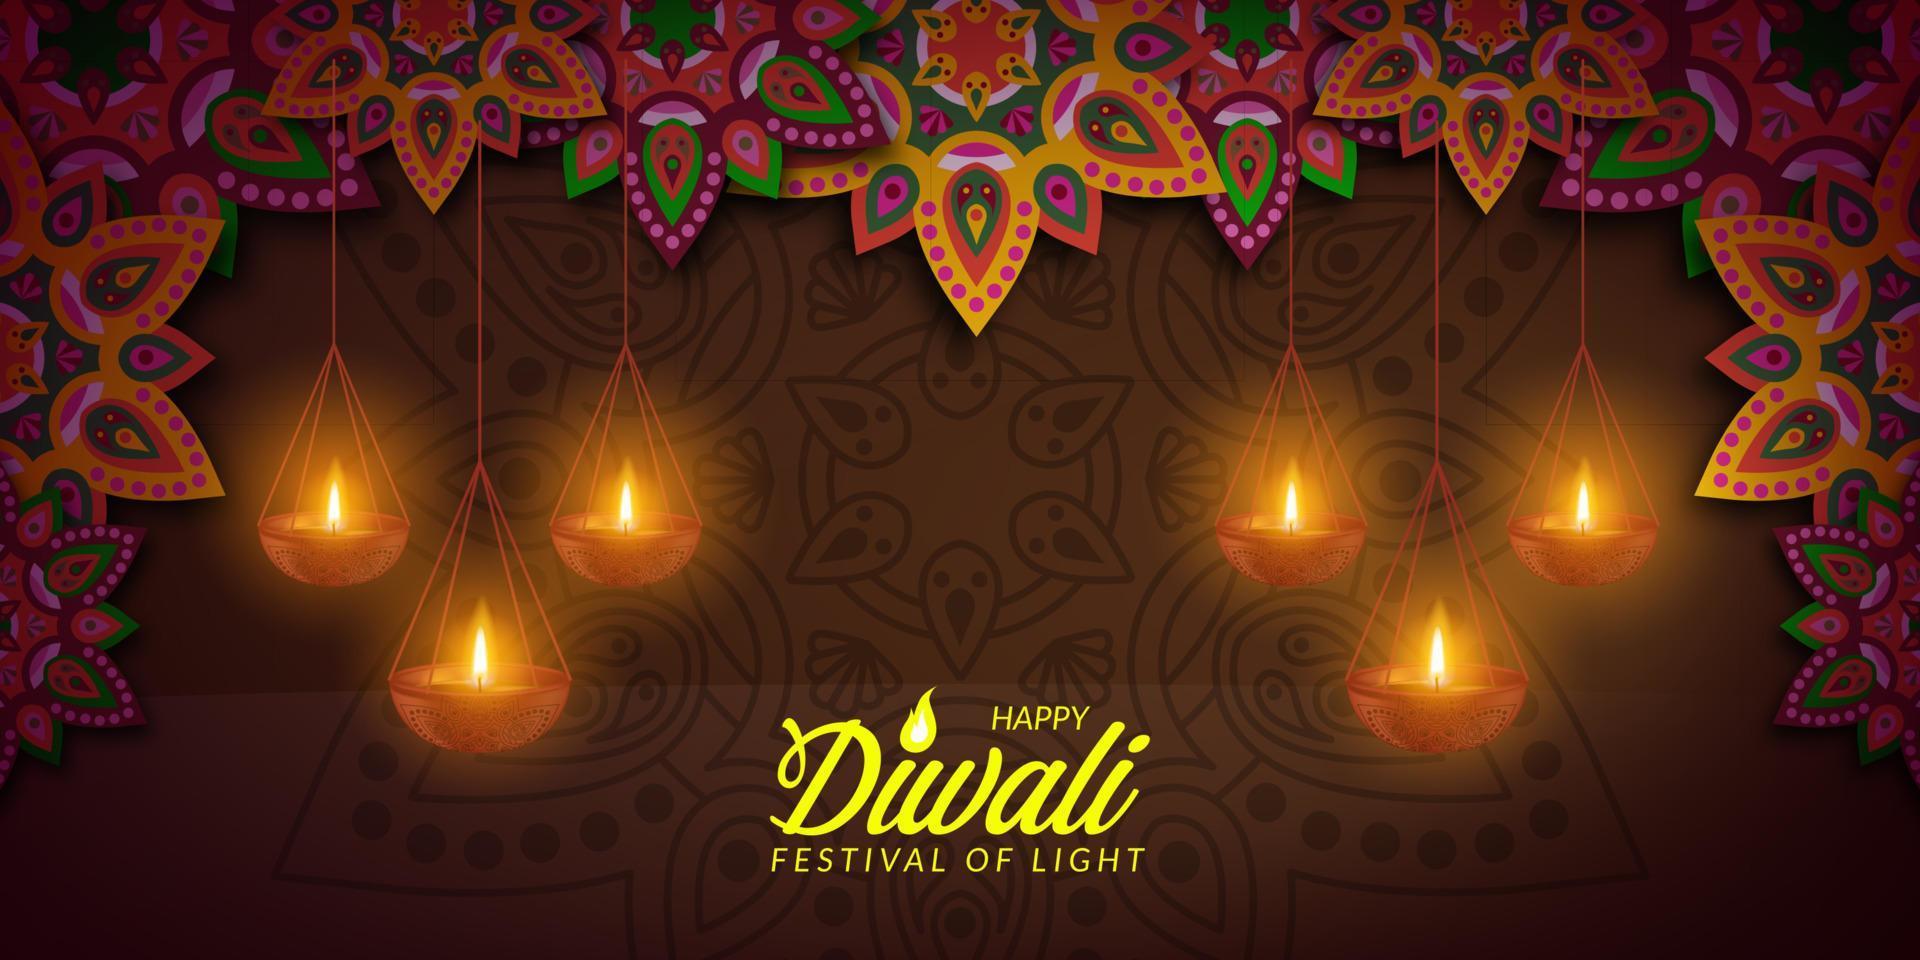 Diwali festival of light rangoli mandala poster banner greeting card vector